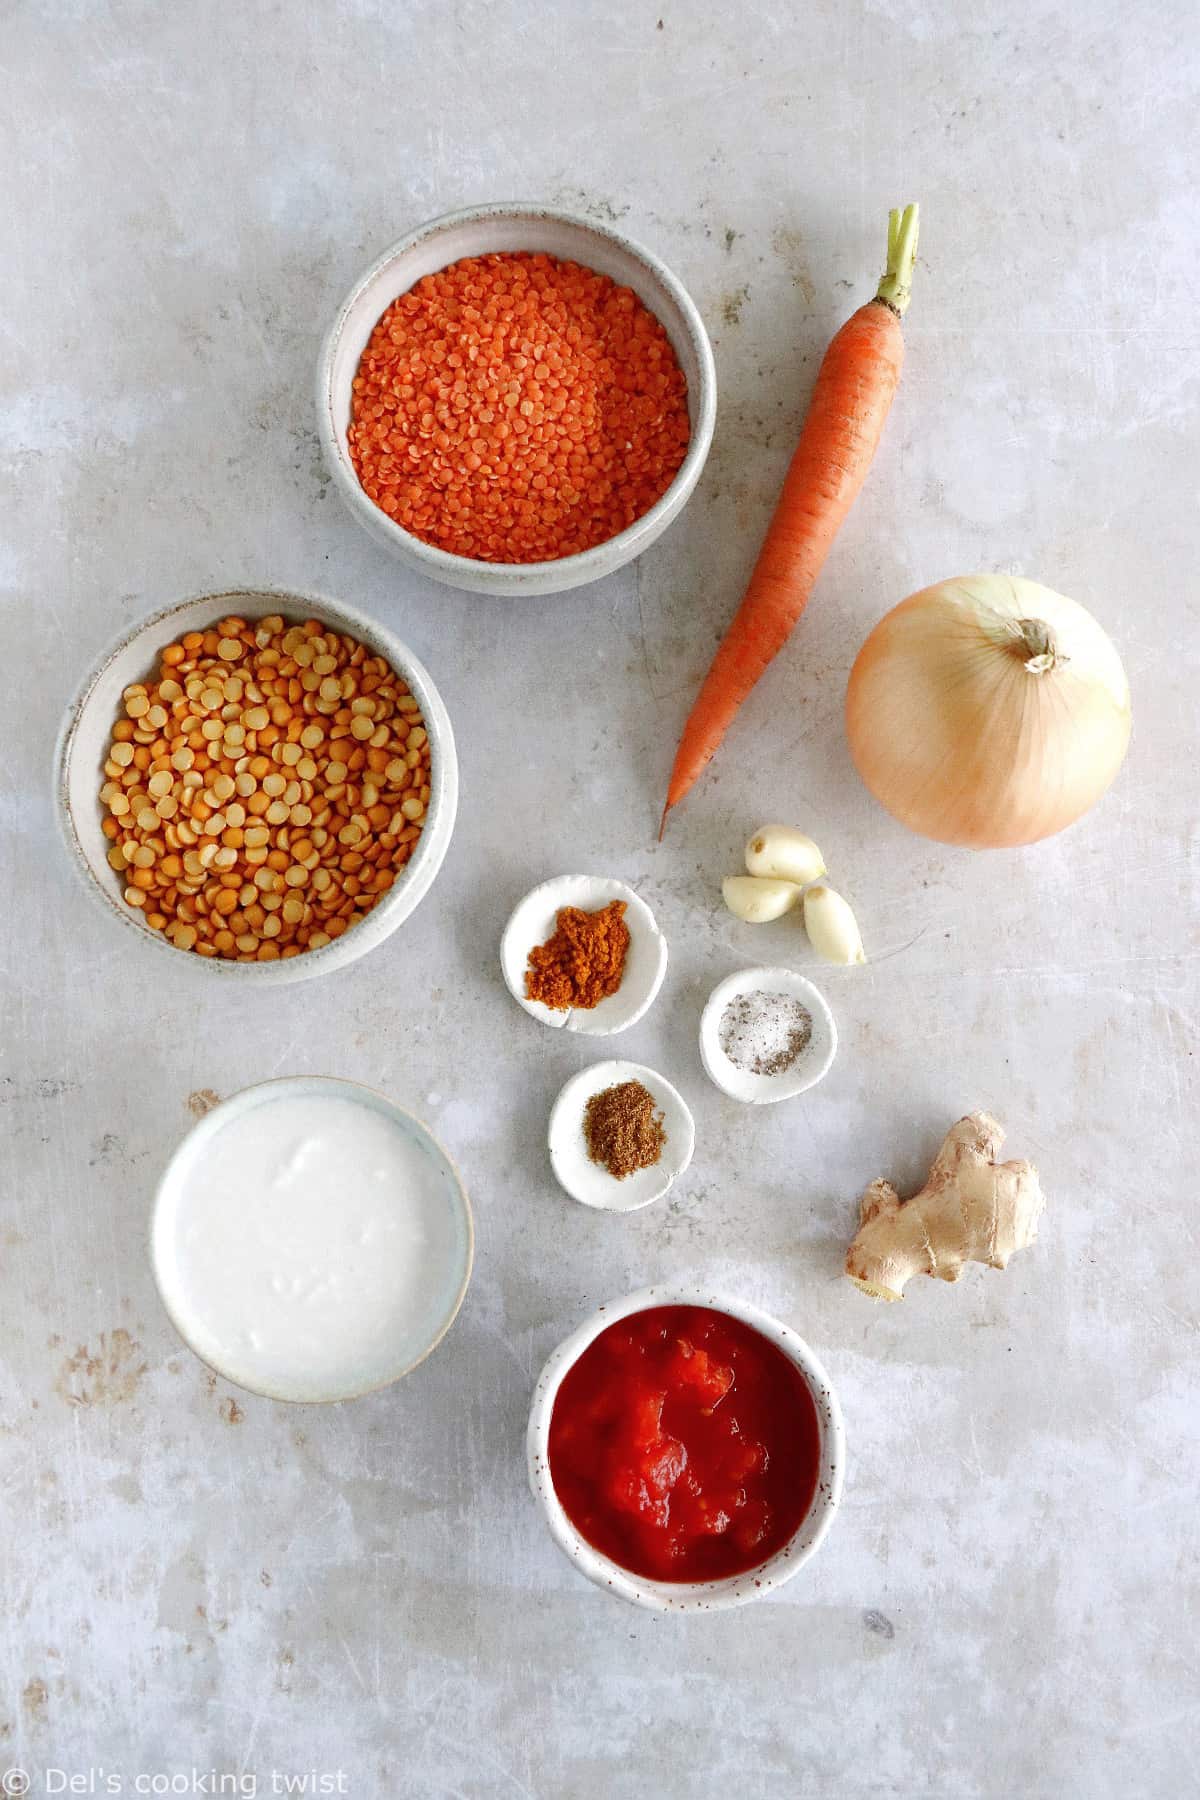 Plongez dans les saveurs douces et réconfortantes de cette soupe de pois cassés et lentilles corail au curry.